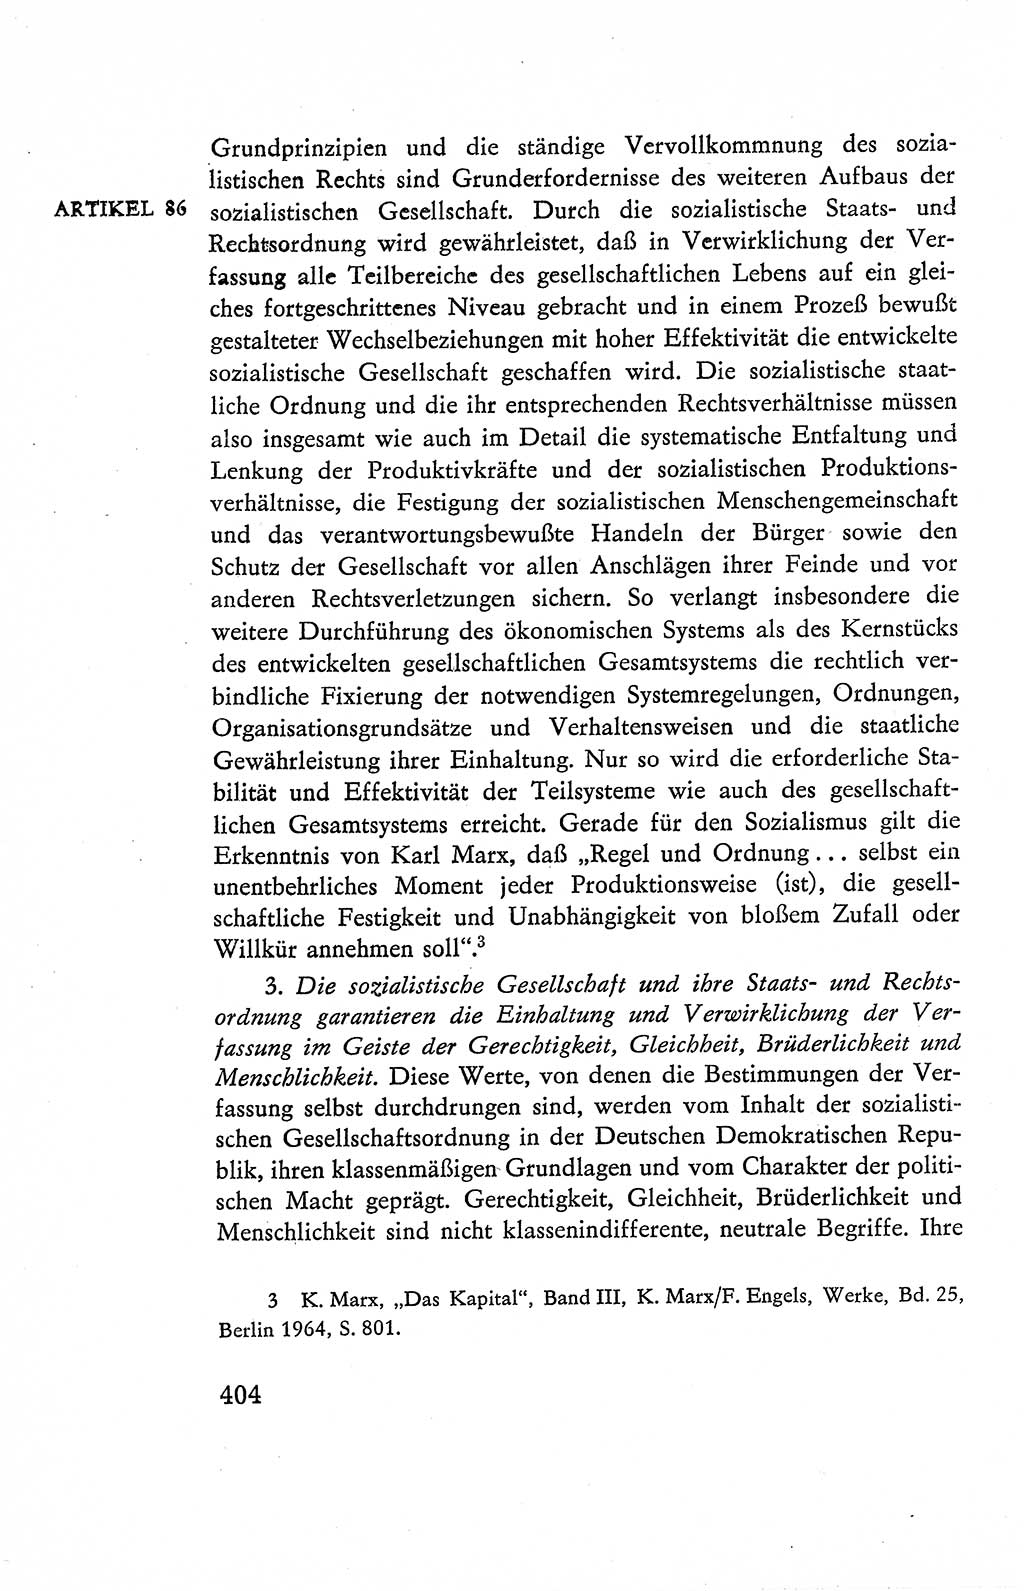 Verfassung der Deutschen Demokratischen Republik (DDR), Dokumente, Kommentar 1969, Band 2, Seite 404 (Verf. DDR Dok. Komm. 1969, Bd. 2, S. 404)